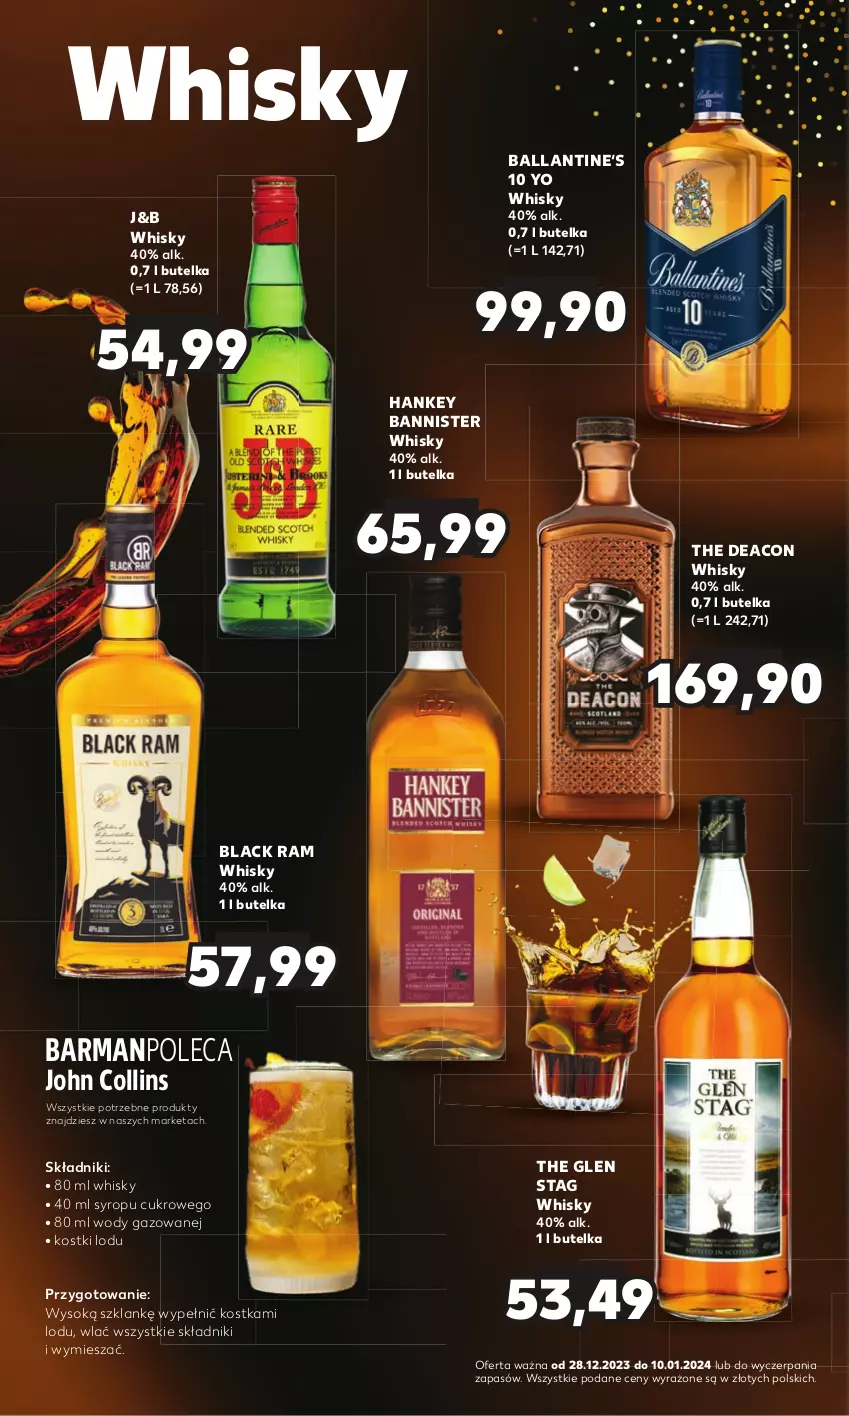 Gazetka promocyjna Kaufland - Barek Kauflandu - ważna 28.12.2023 do 10.01.2024 - strona 8 - produkty: Lack, Sok, Syrop, Whisky